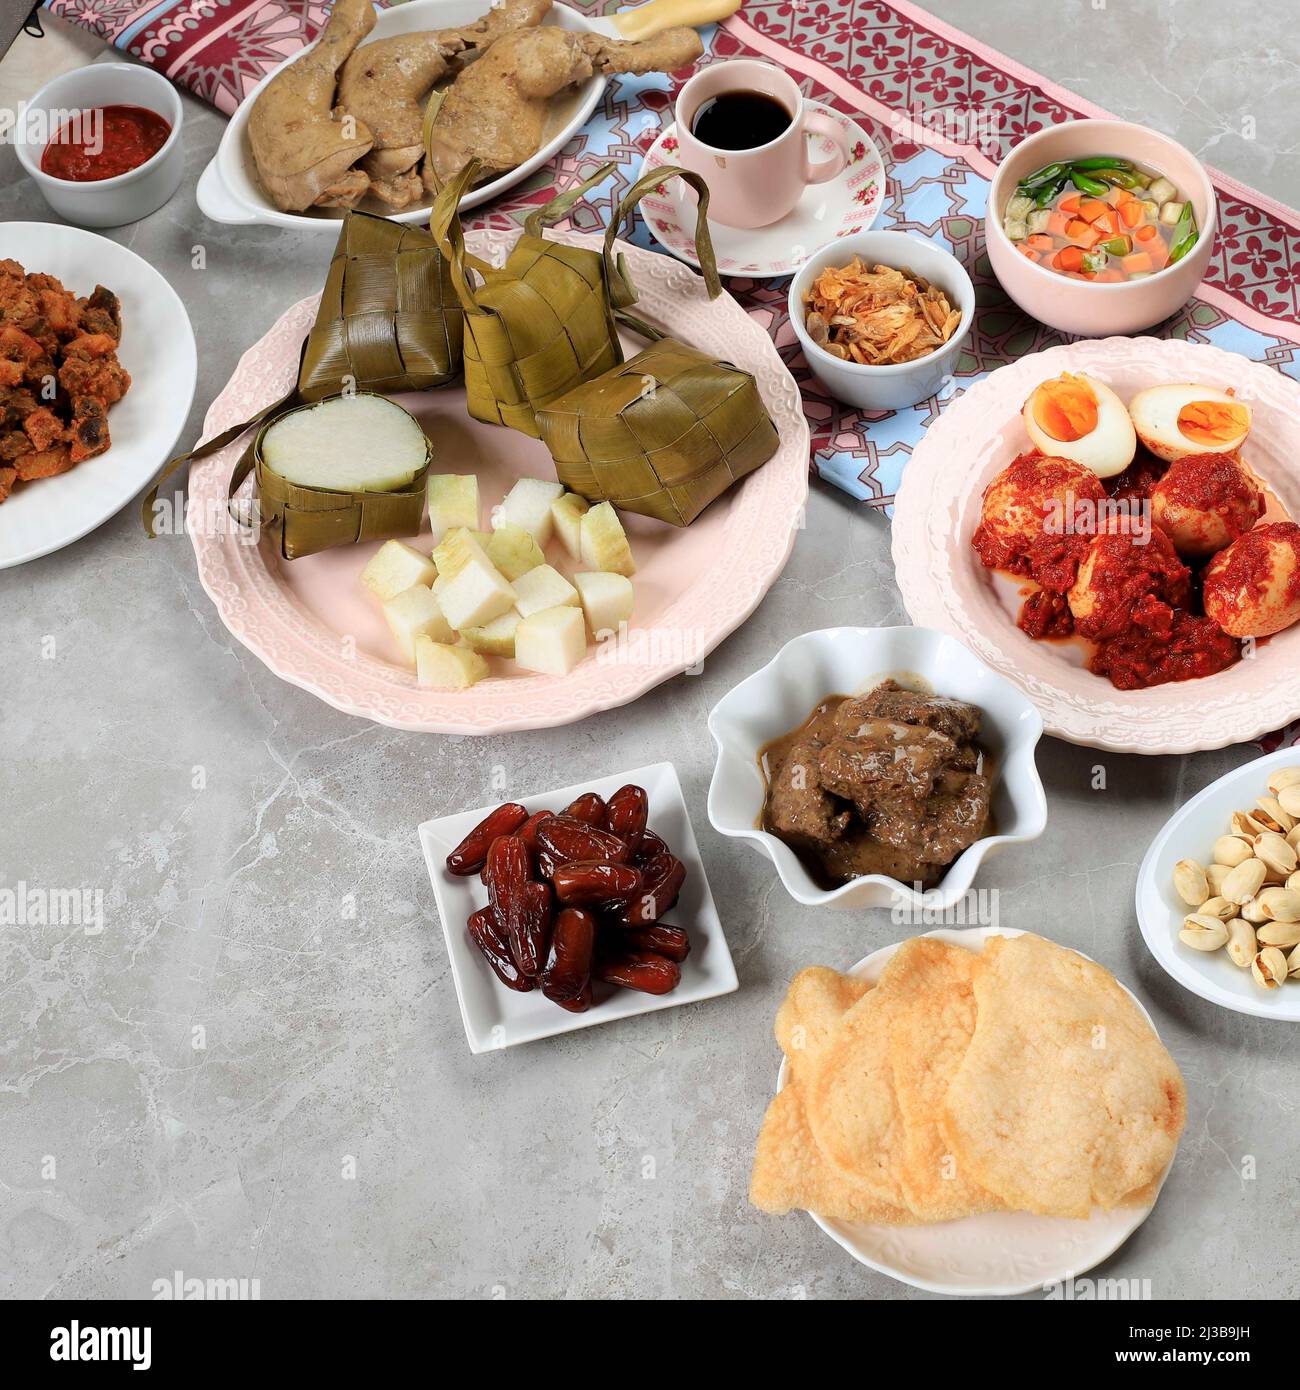 Ketupat Lebaran. Traditionelles festliches Gericht aus Reiskuchen oder Ketupat mit verschiedenen Beilagen, beliebt während der Eid-Feierlichkeiten. Stockfoto